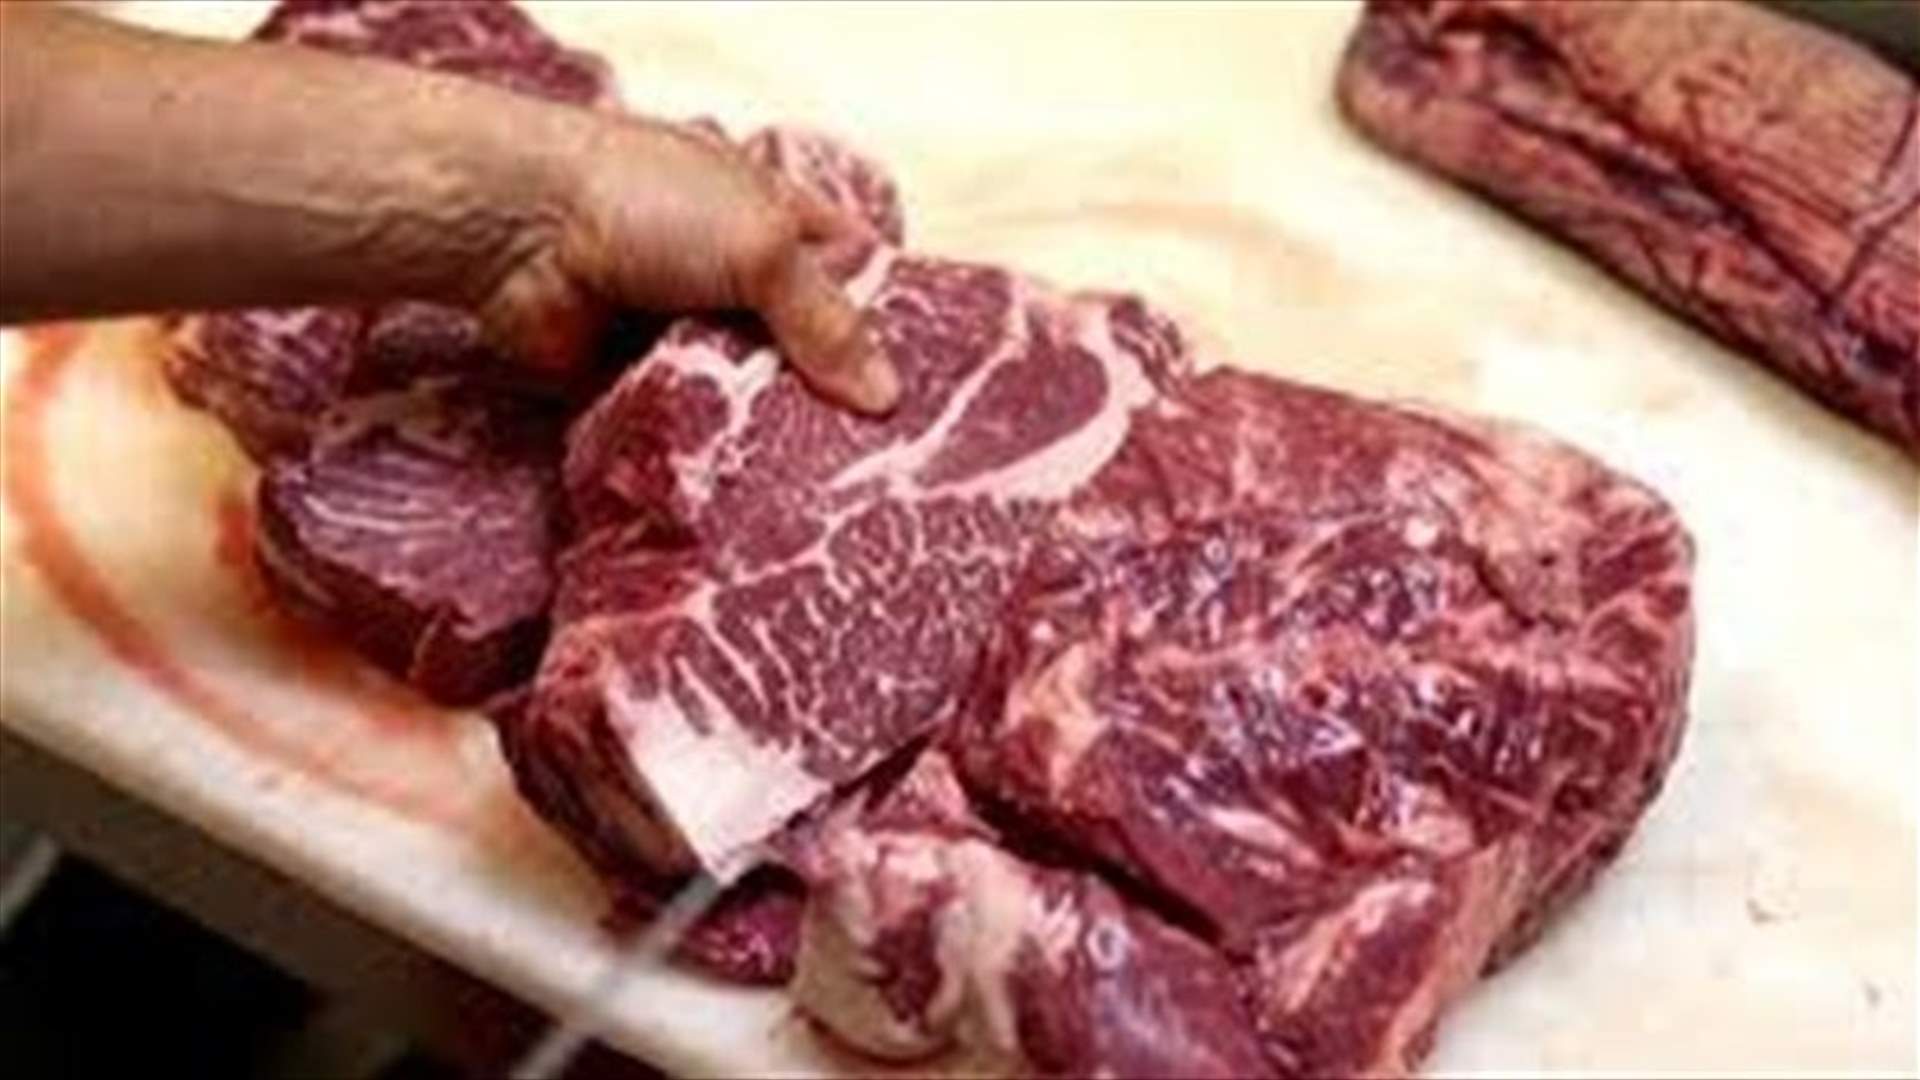 بعد تسجيل 50 حالة تسمم... مصلحة الصحة في البقاع ختمت 4 ملاحم بالشمع الأحمر لبيعها لحما ملوثا